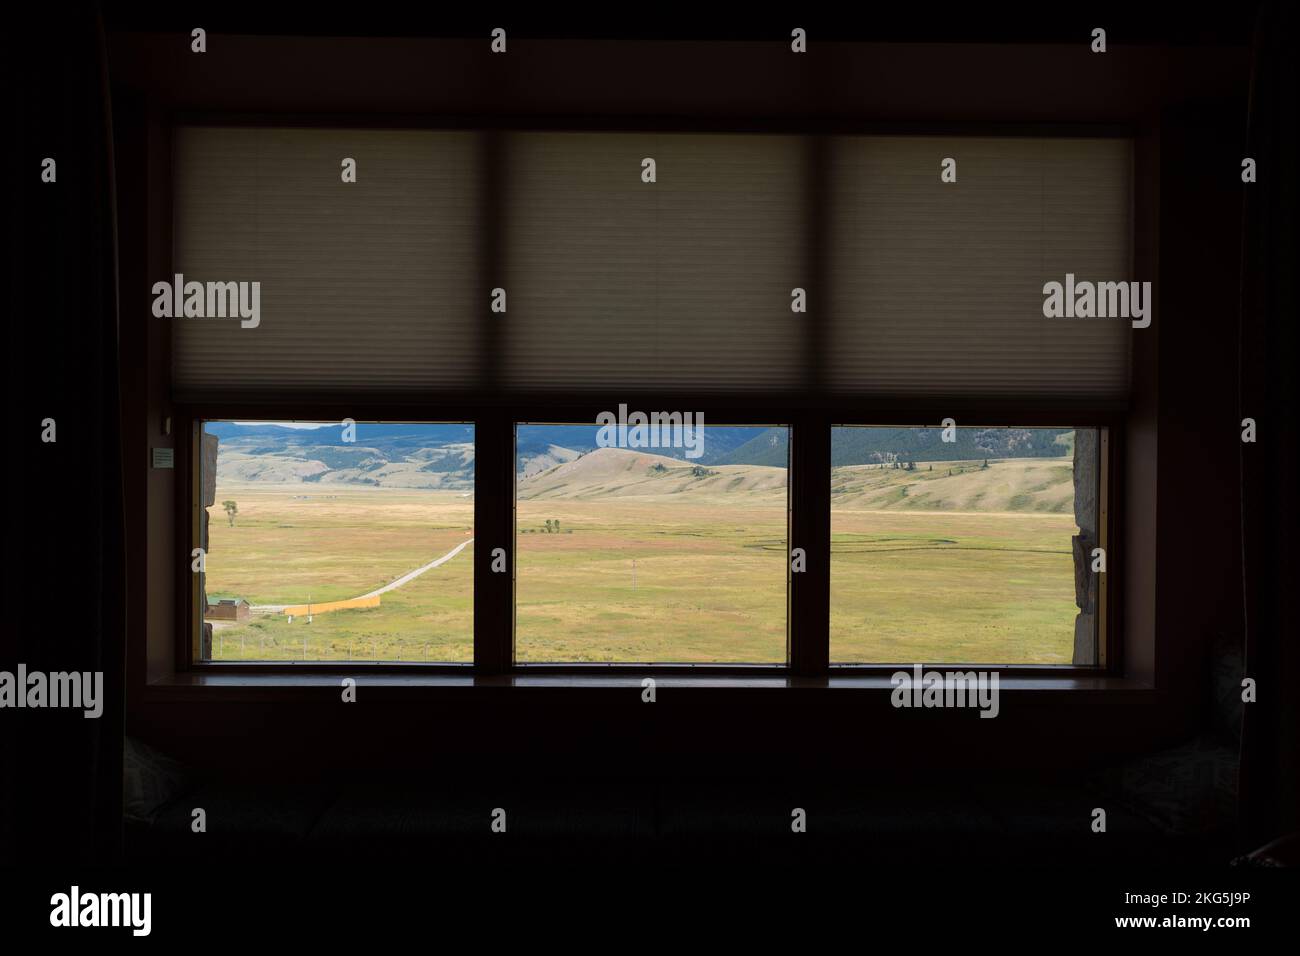 Un magnifique paysage luxuriant à Jackson, Wyoming vu d'une fenêtre dans une pièce sombre Banque D'Images